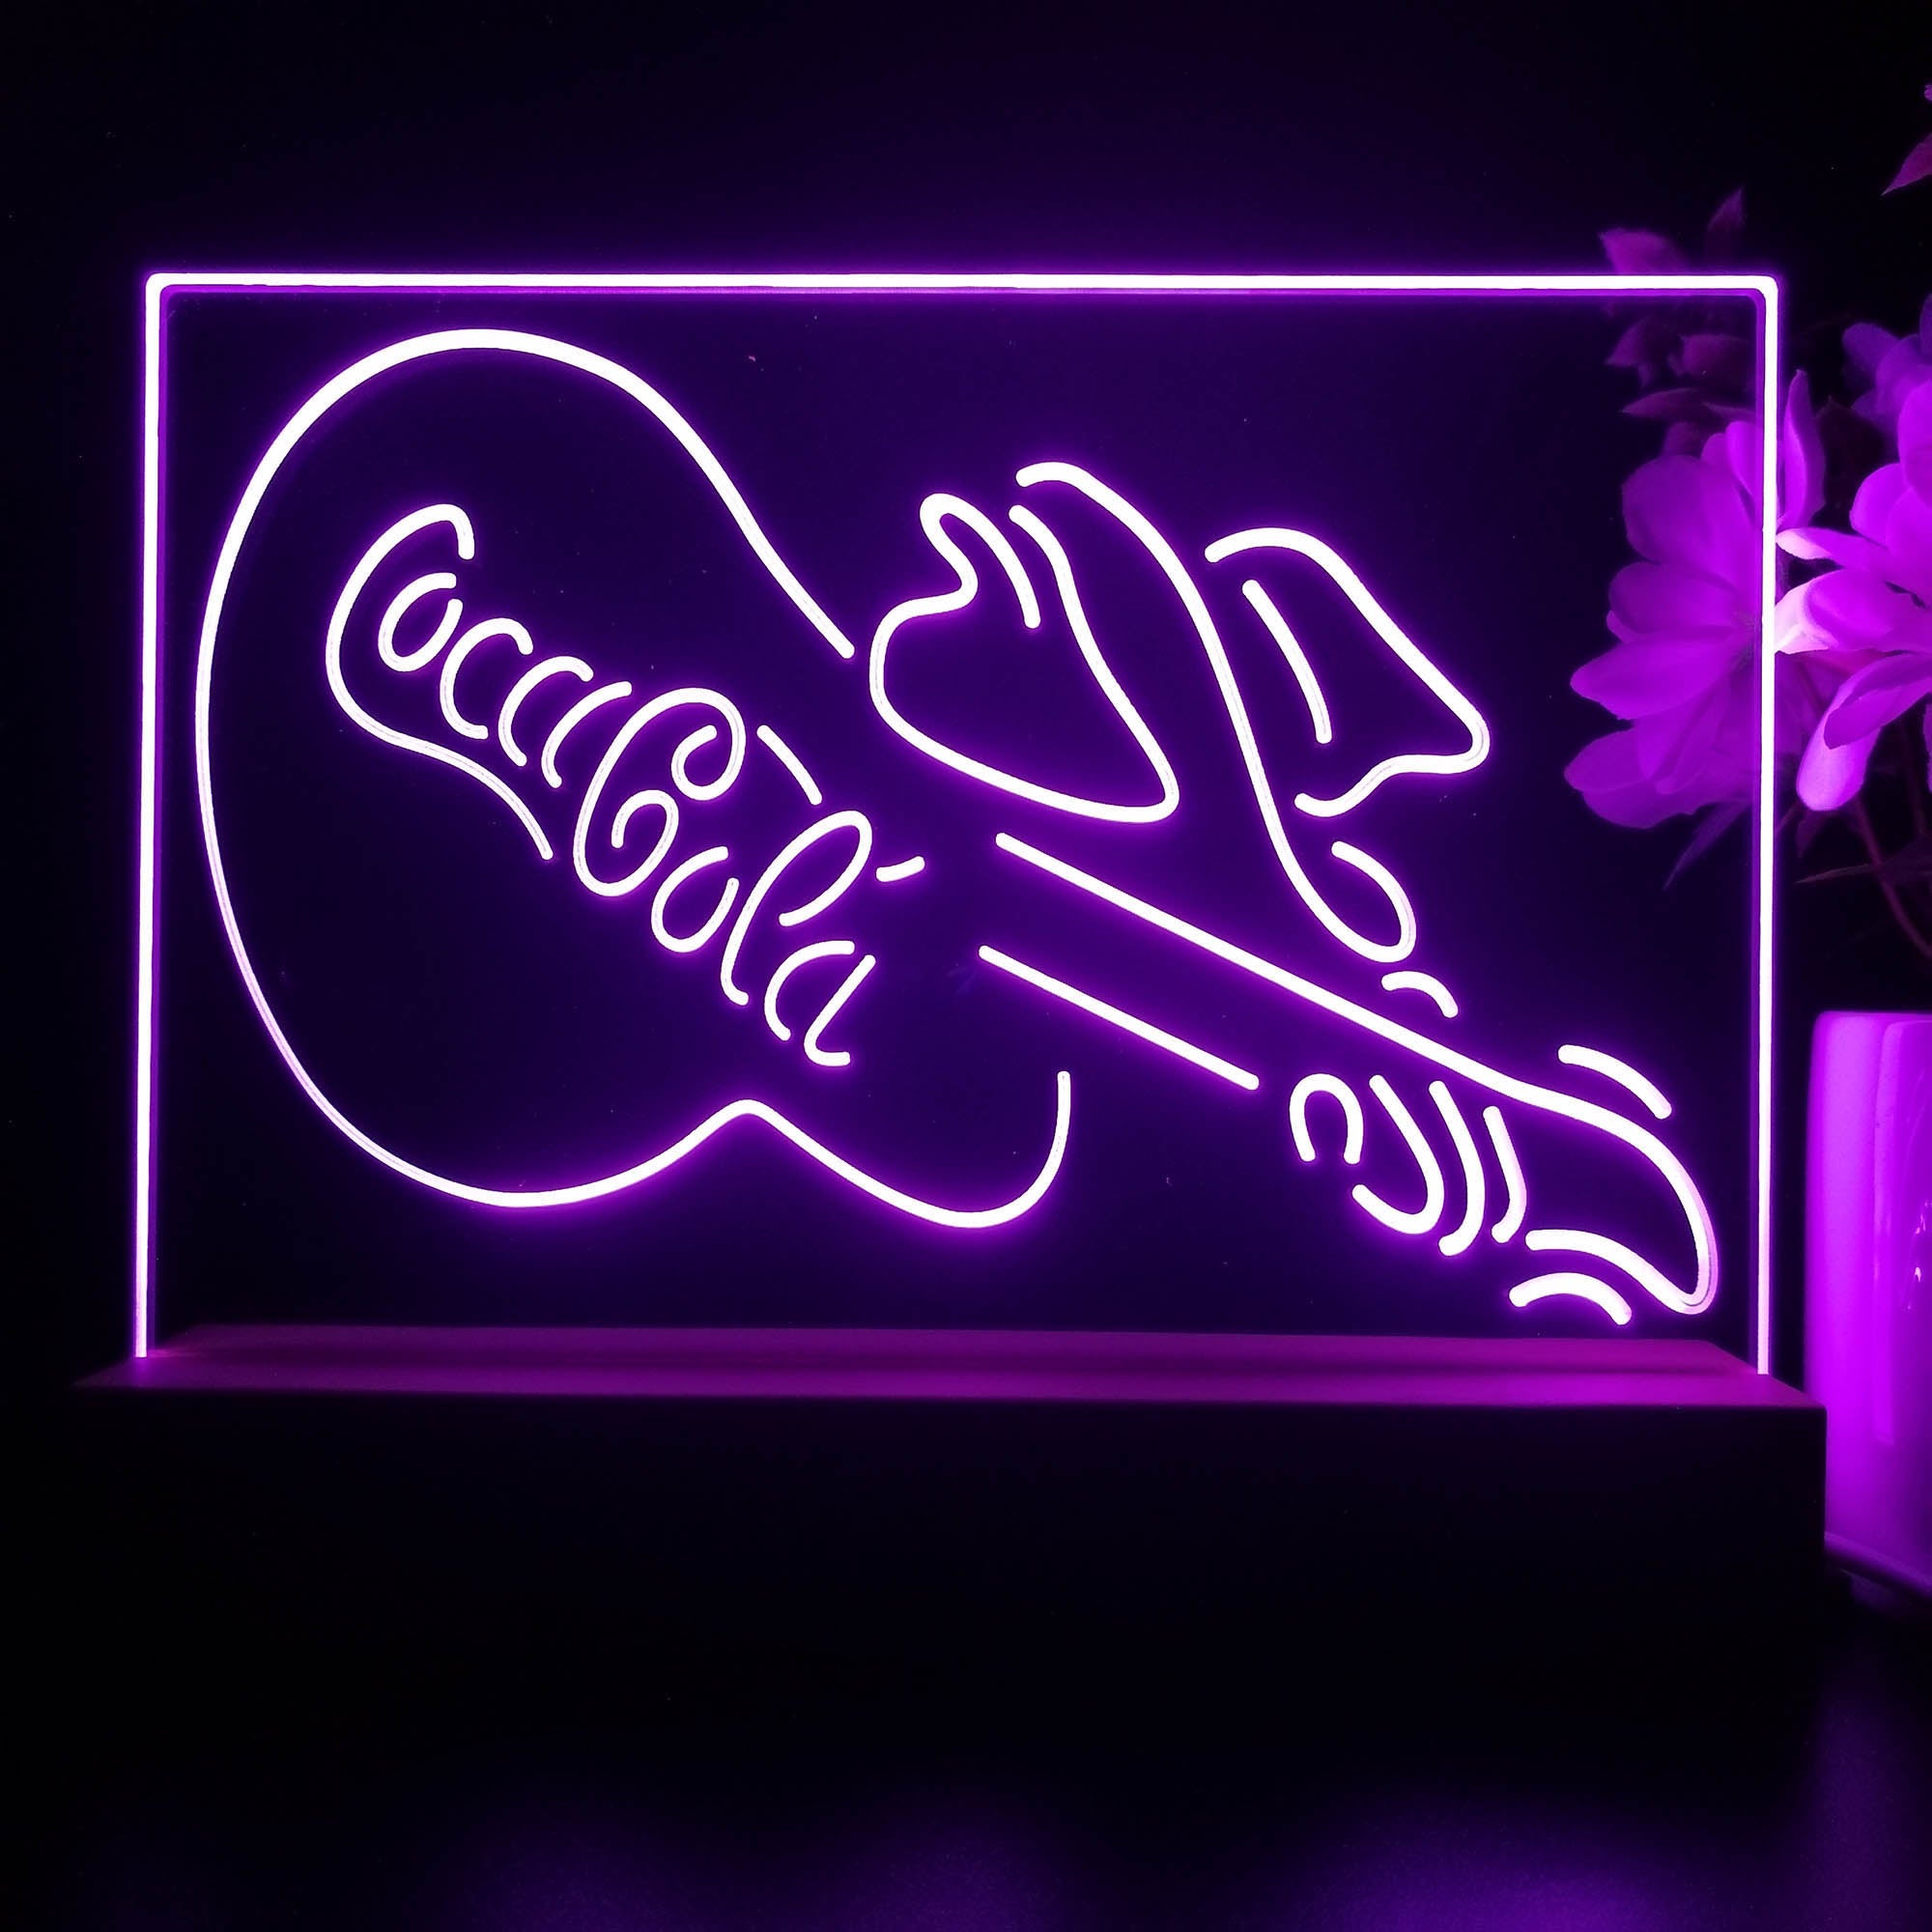 Coca Cola Guitar Bar Neon Sign Pub Bar Lamp